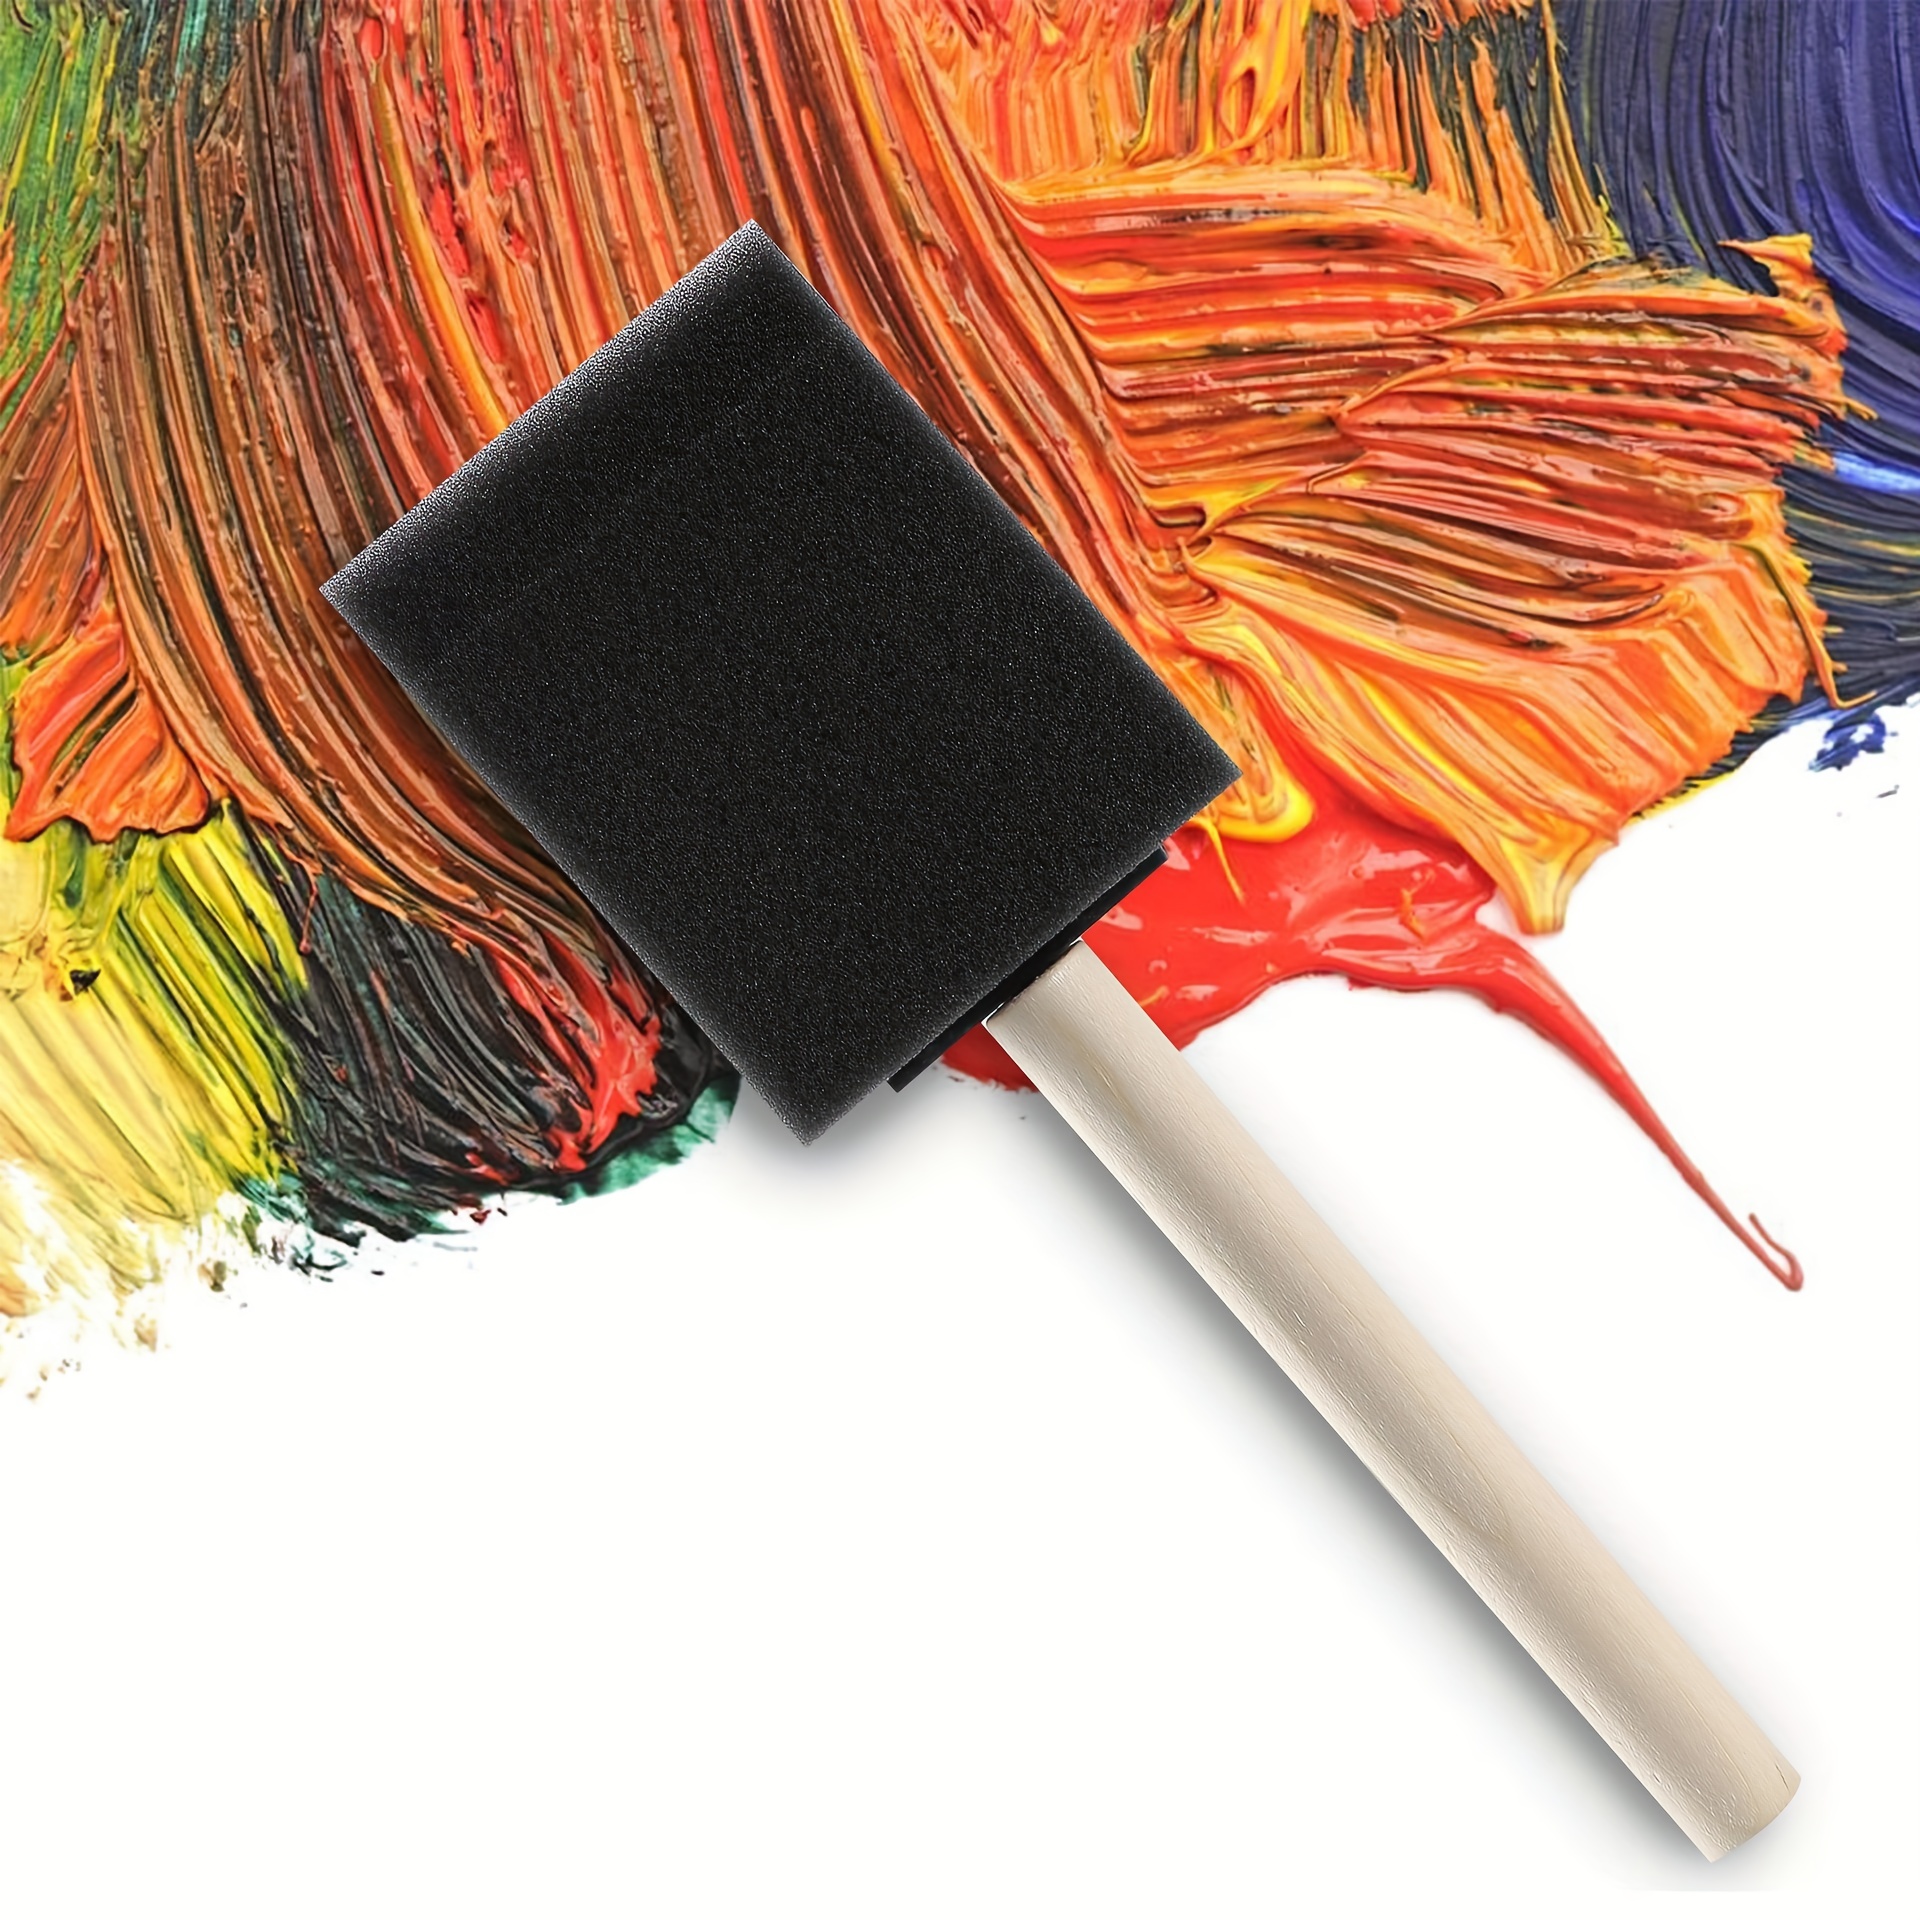  Foam Paint Brushes, Sponge Brushes, Sponge Paint Brush